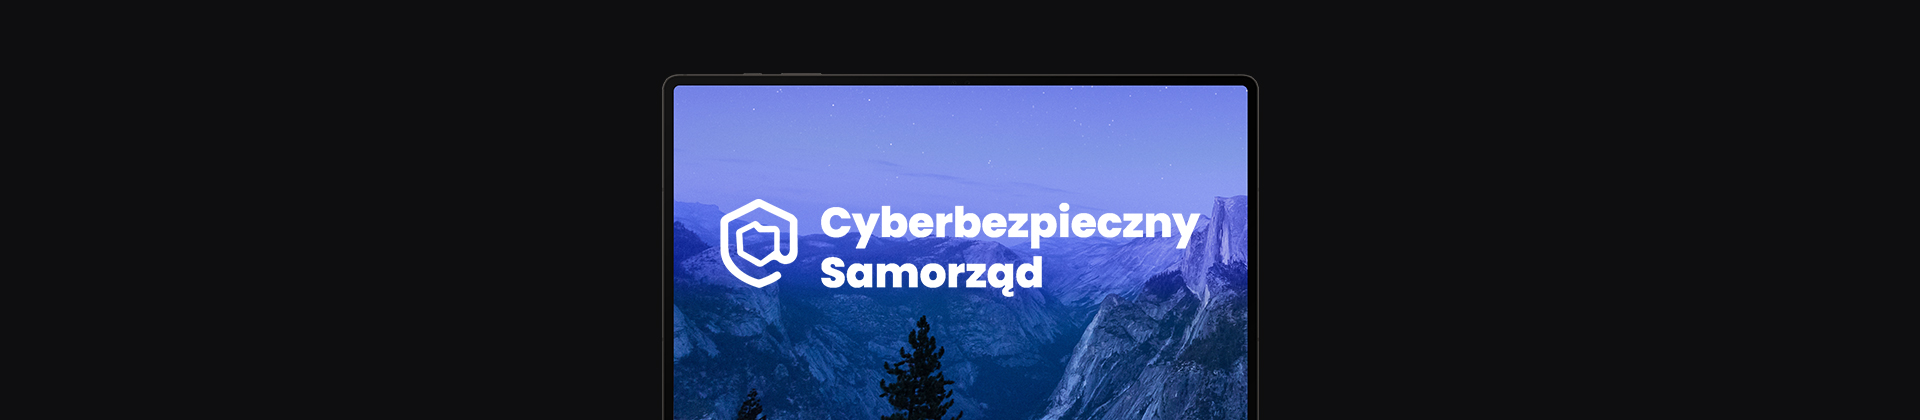 banner z ekranem laptopa, na nim logo Cyberbezpieczny Samorząd